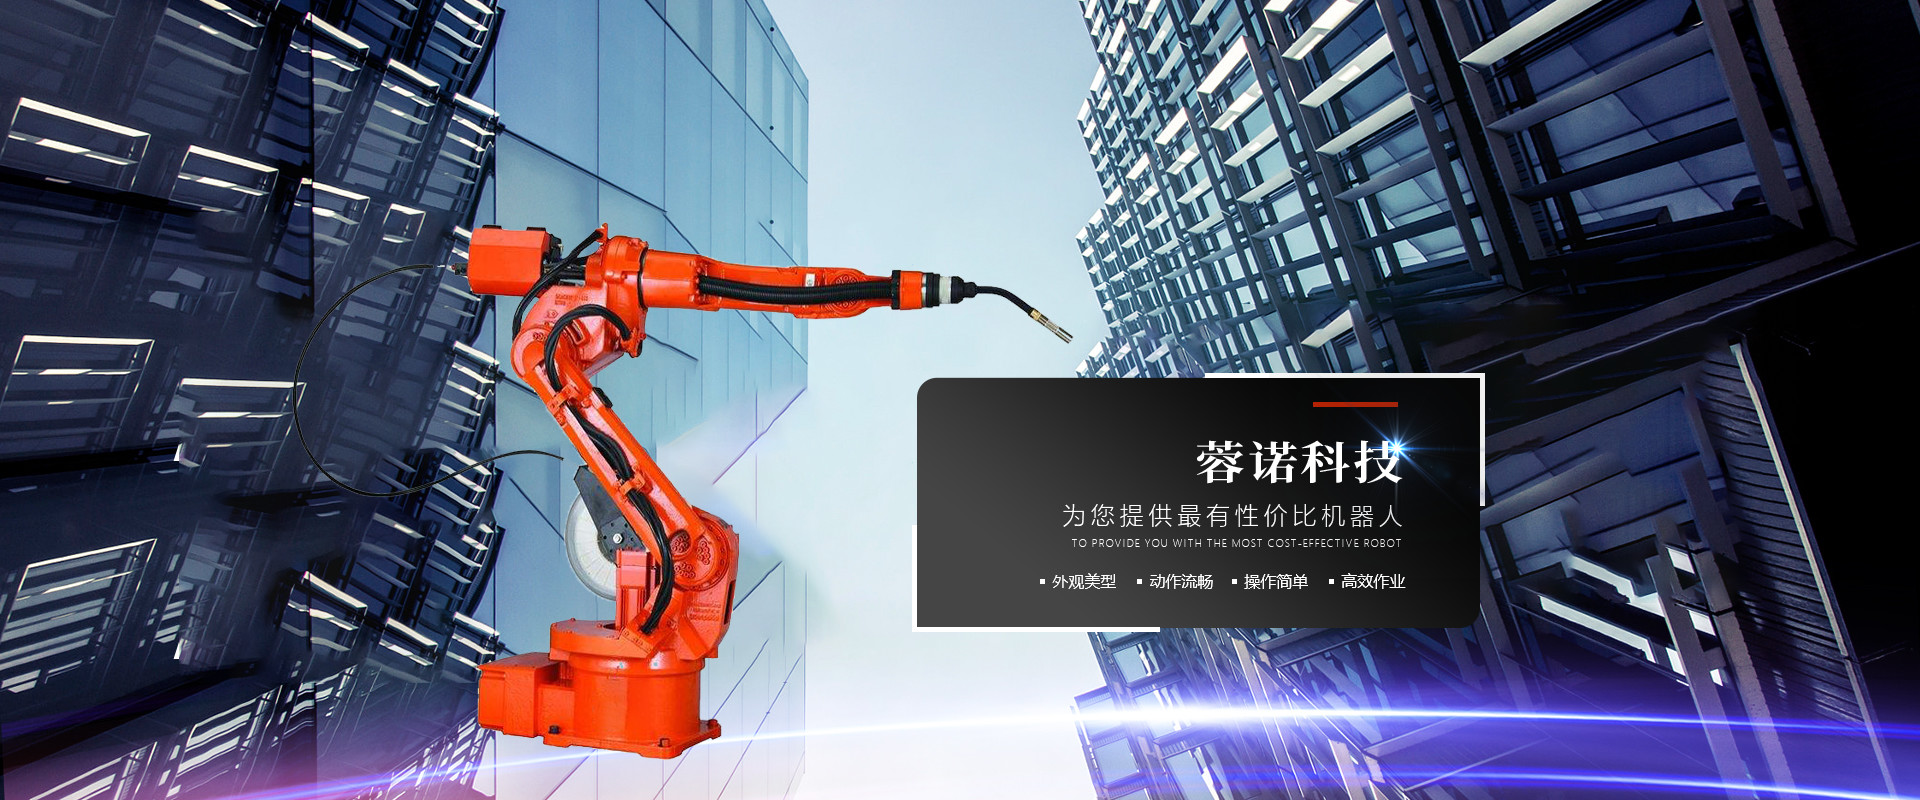 机械自动生产设备供应商_自动生产设备类型相关-四川蓉诺科技有限公司